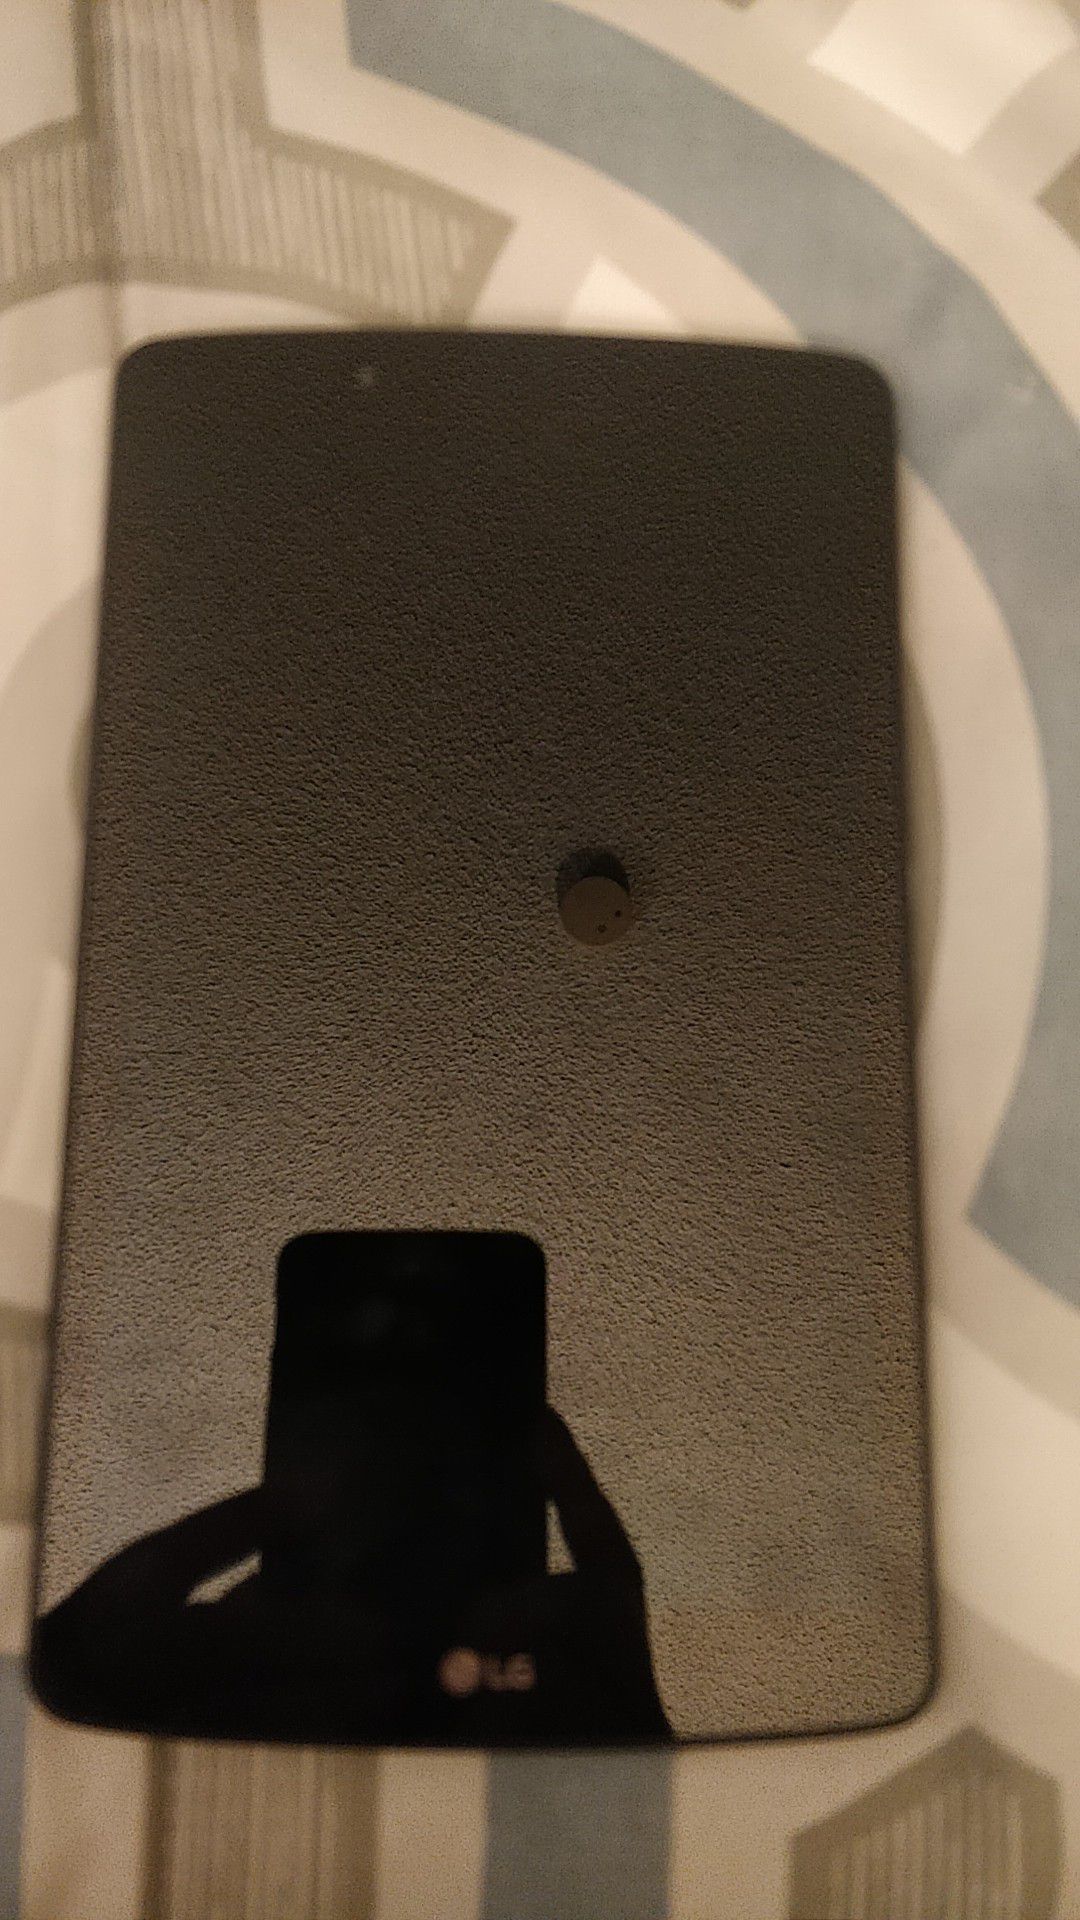 Tablet G Pad 8.0 Black 16GB "LG"